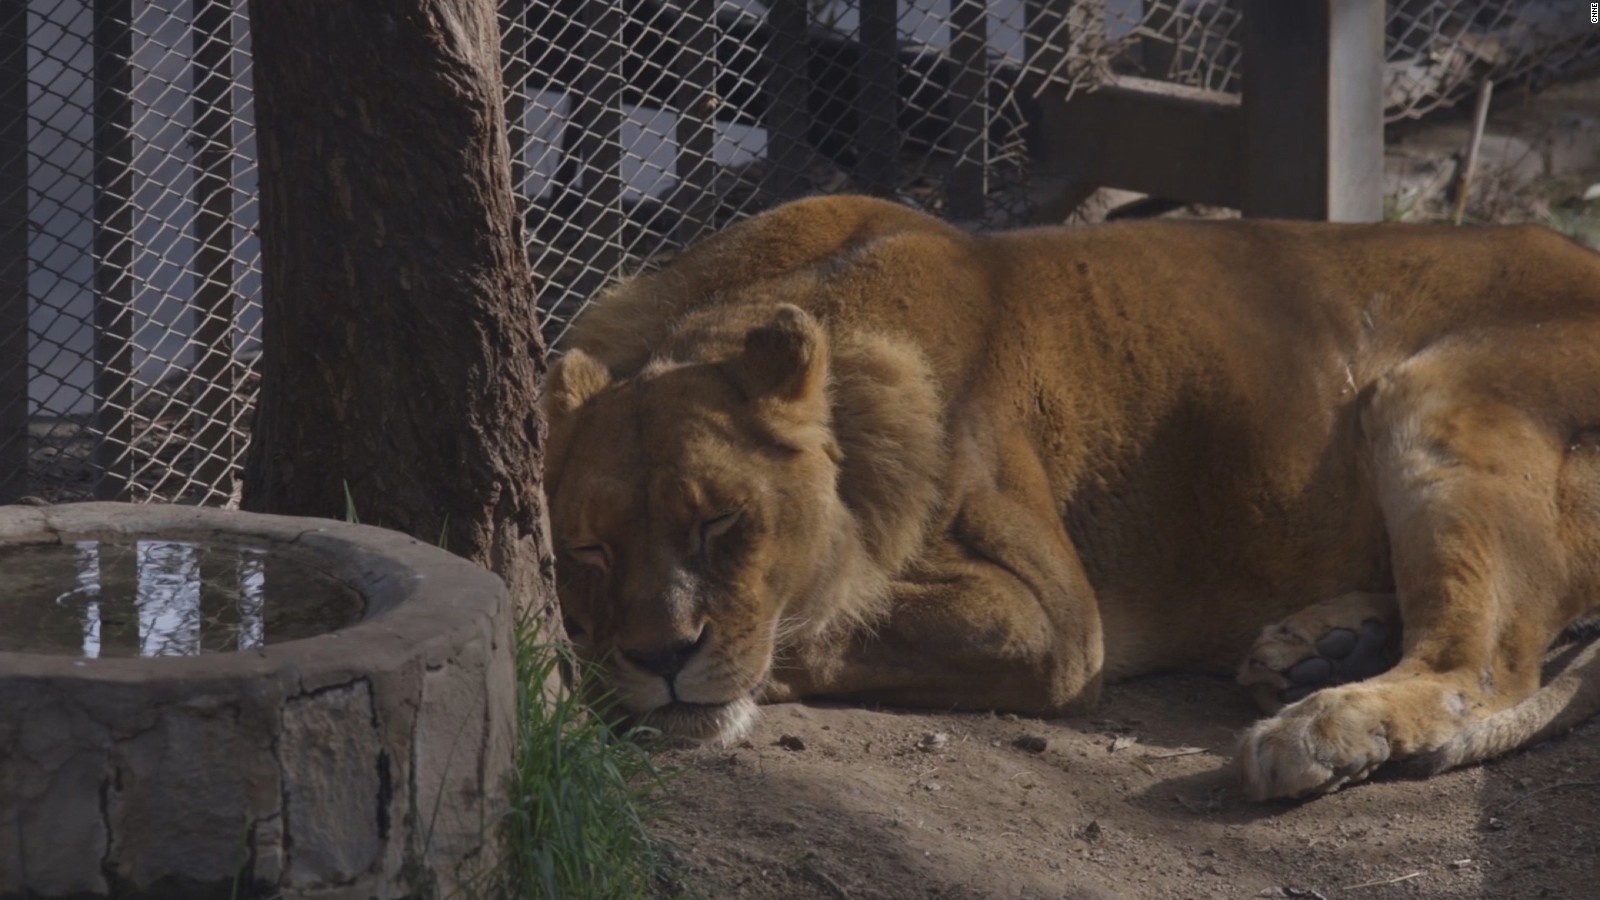 Zoológico de Chile que mató dos de sus leones ofrece su versión | Video |  CNN